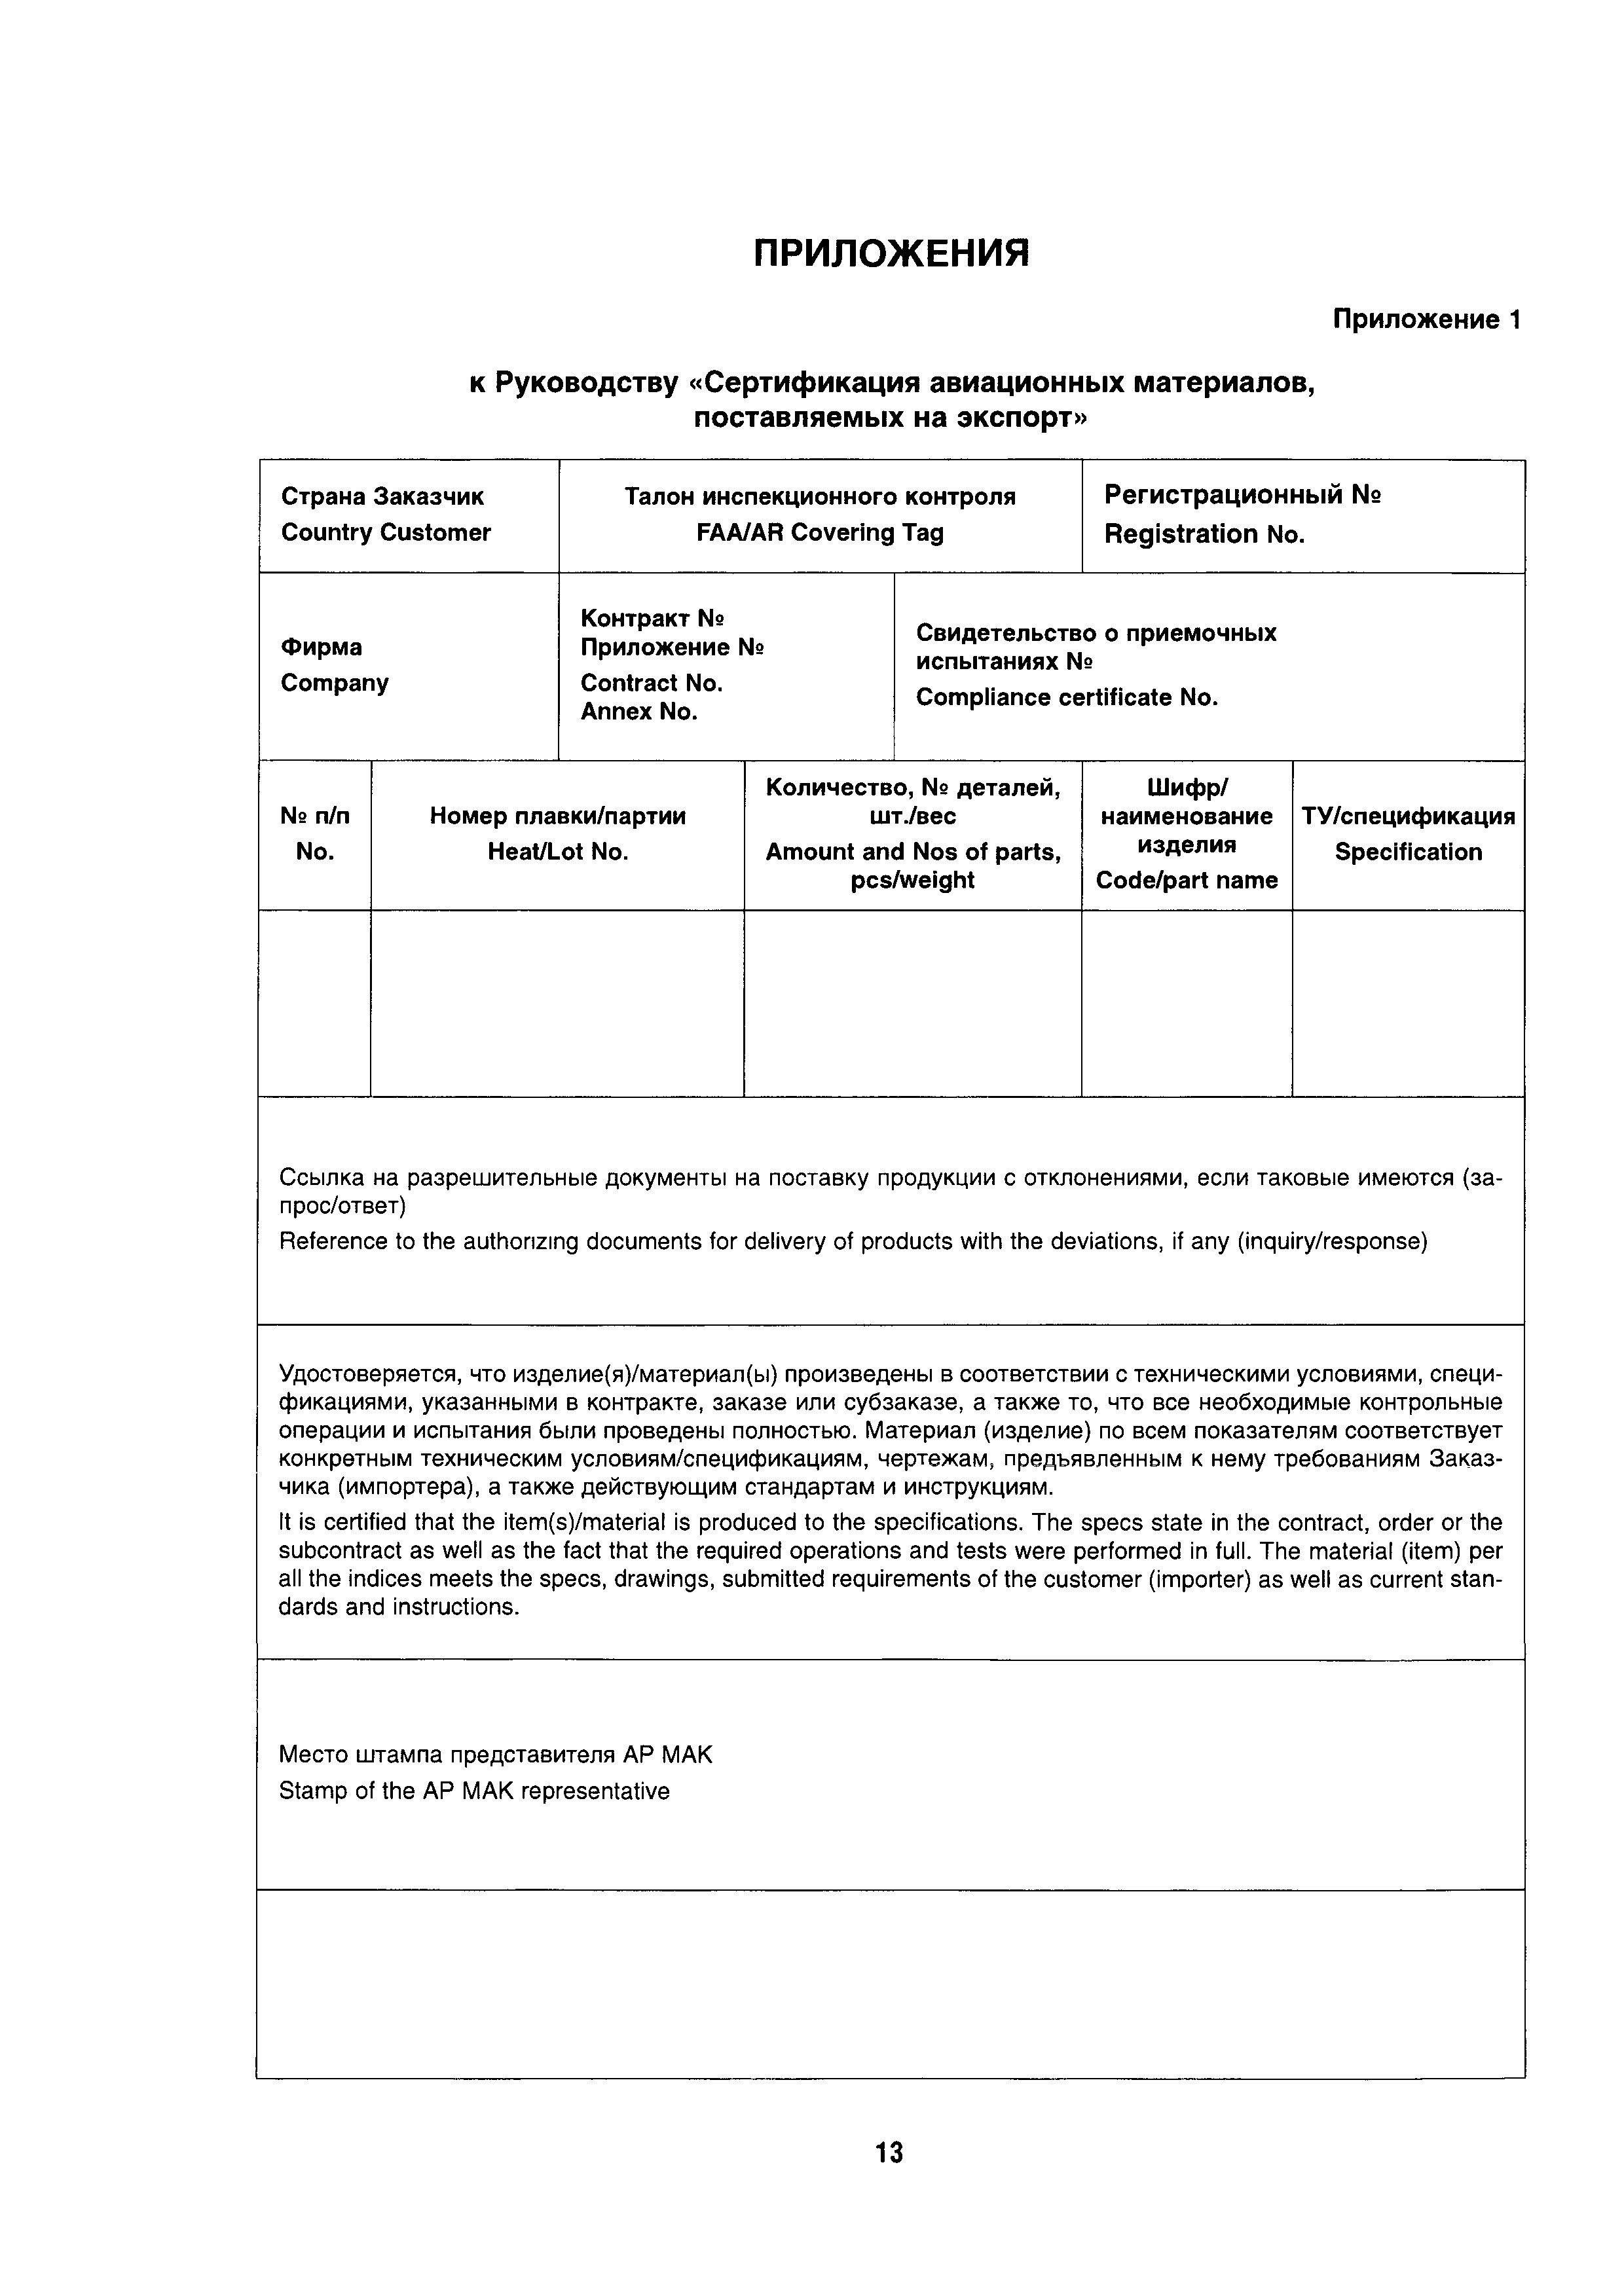 Директивное письмо 04-2003